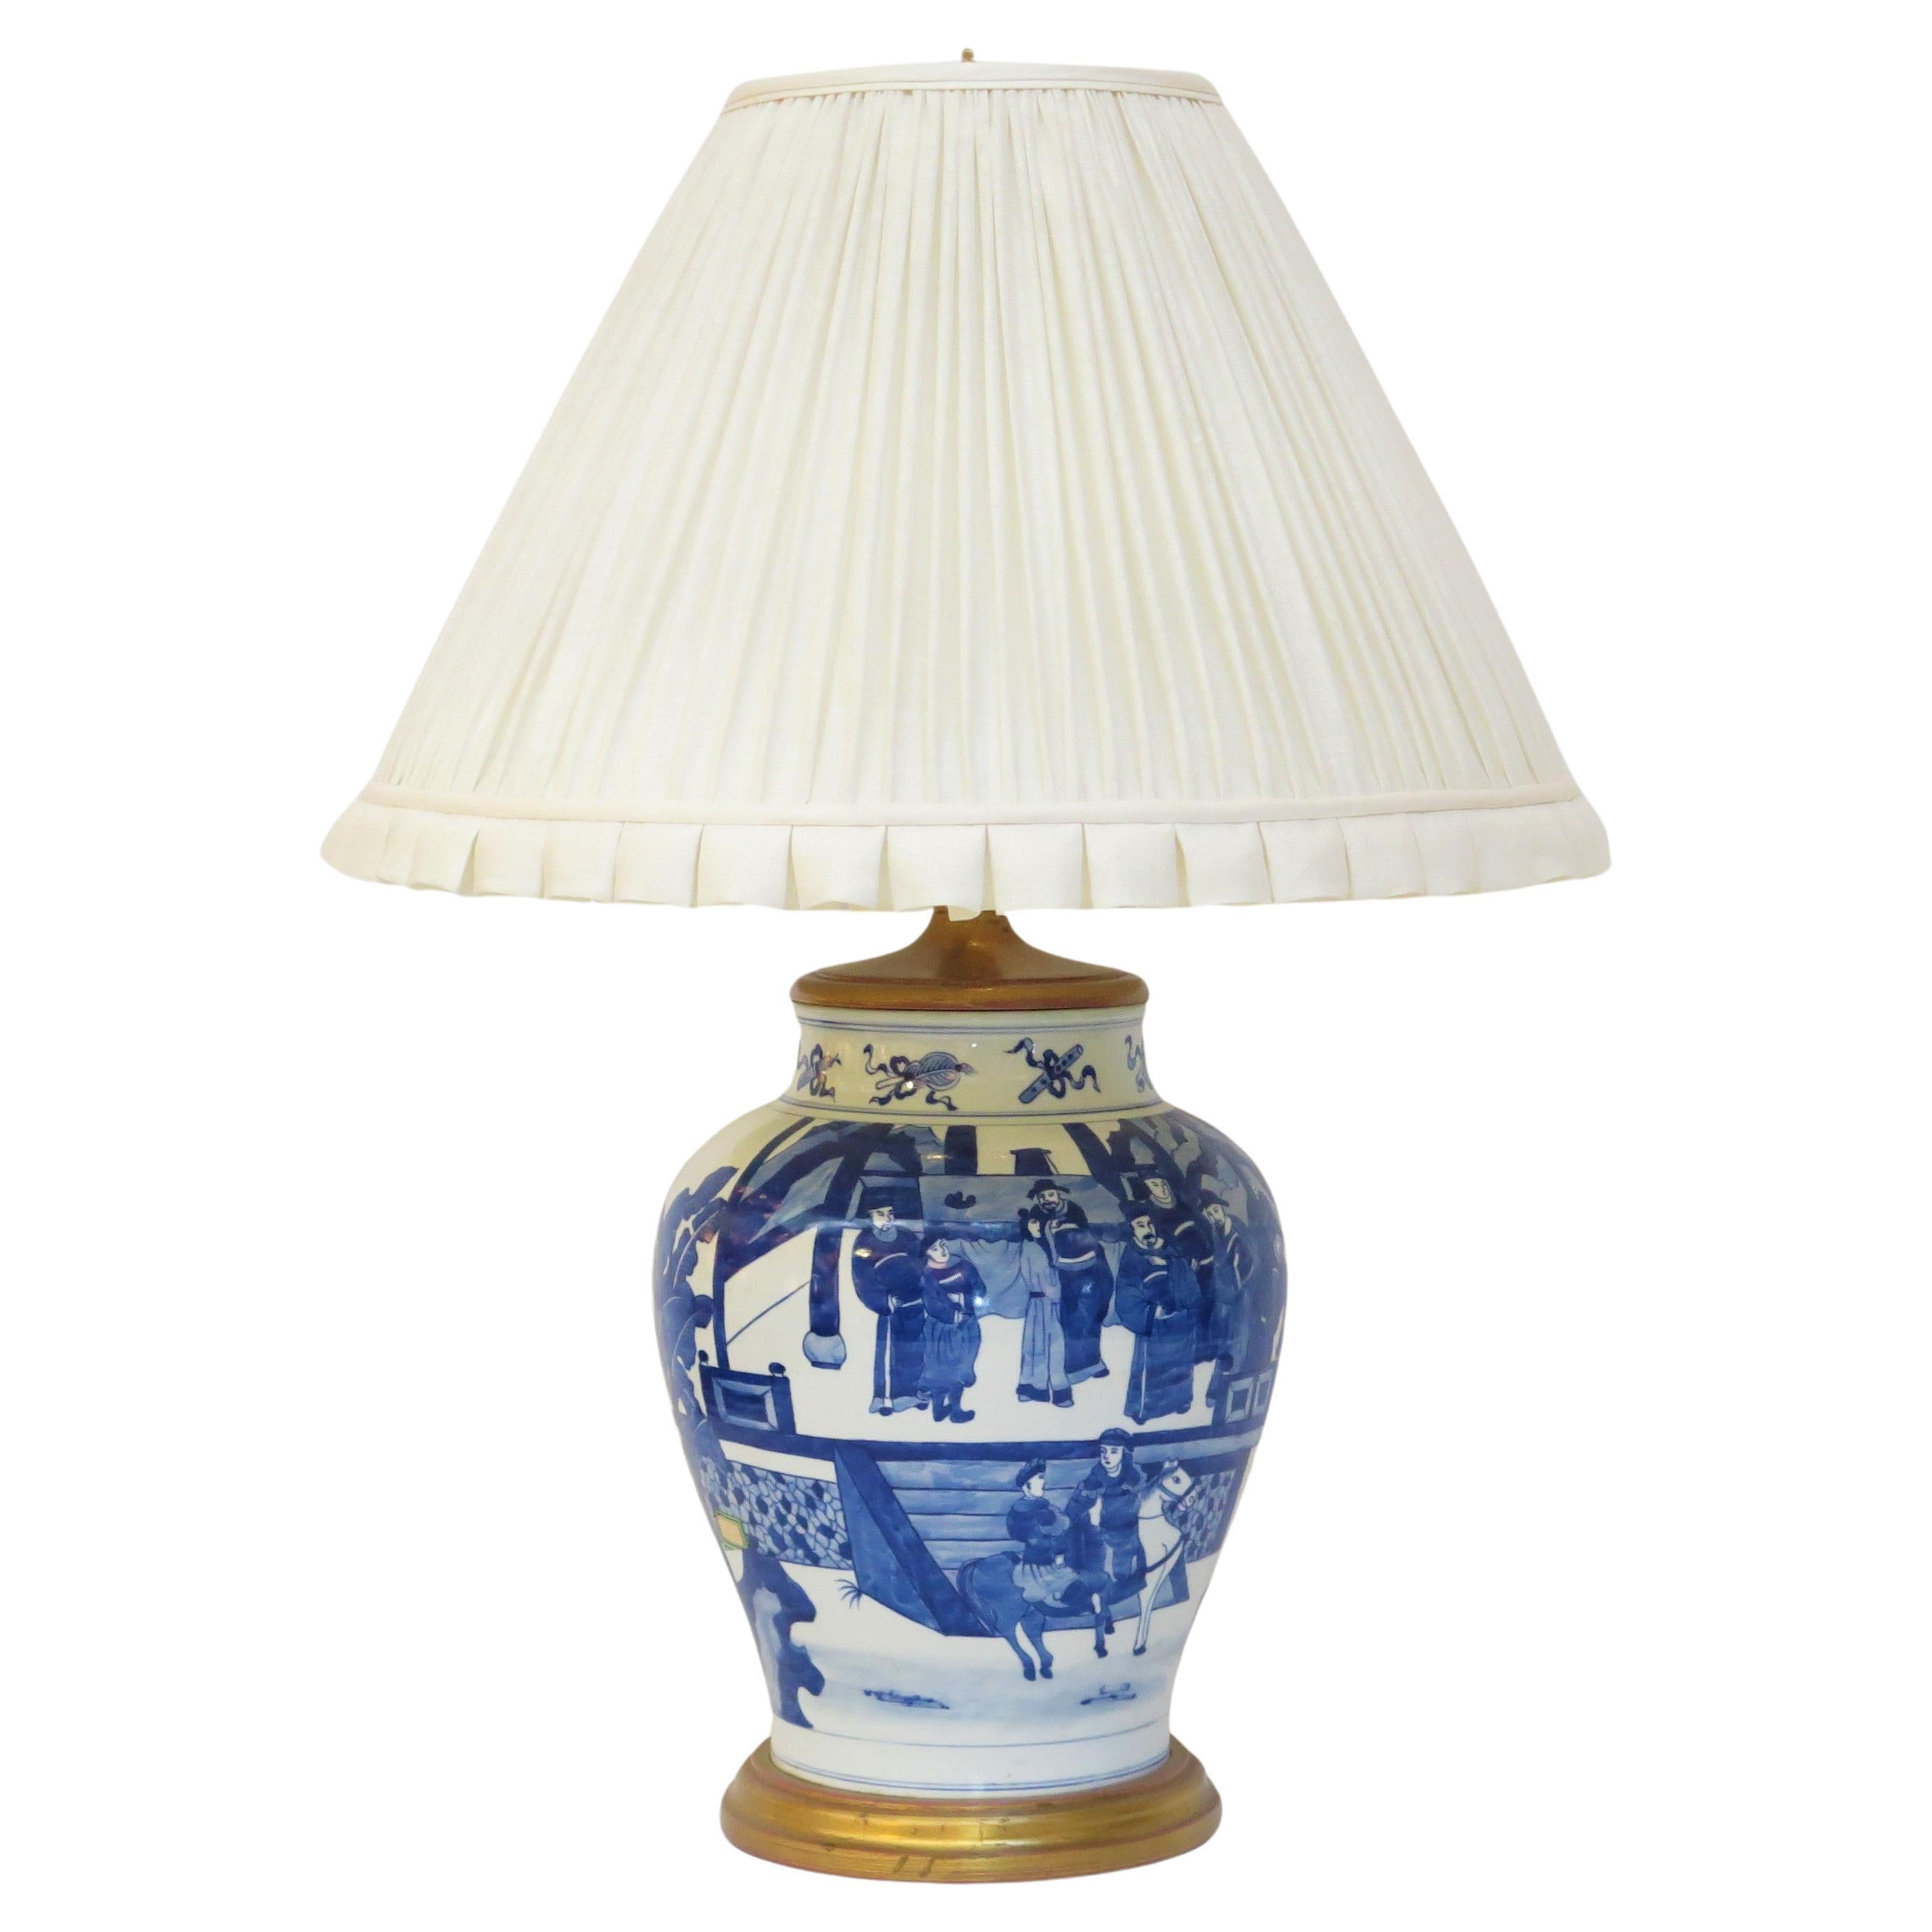 Lampe aus blauem und weißem chinesischem Porzellan